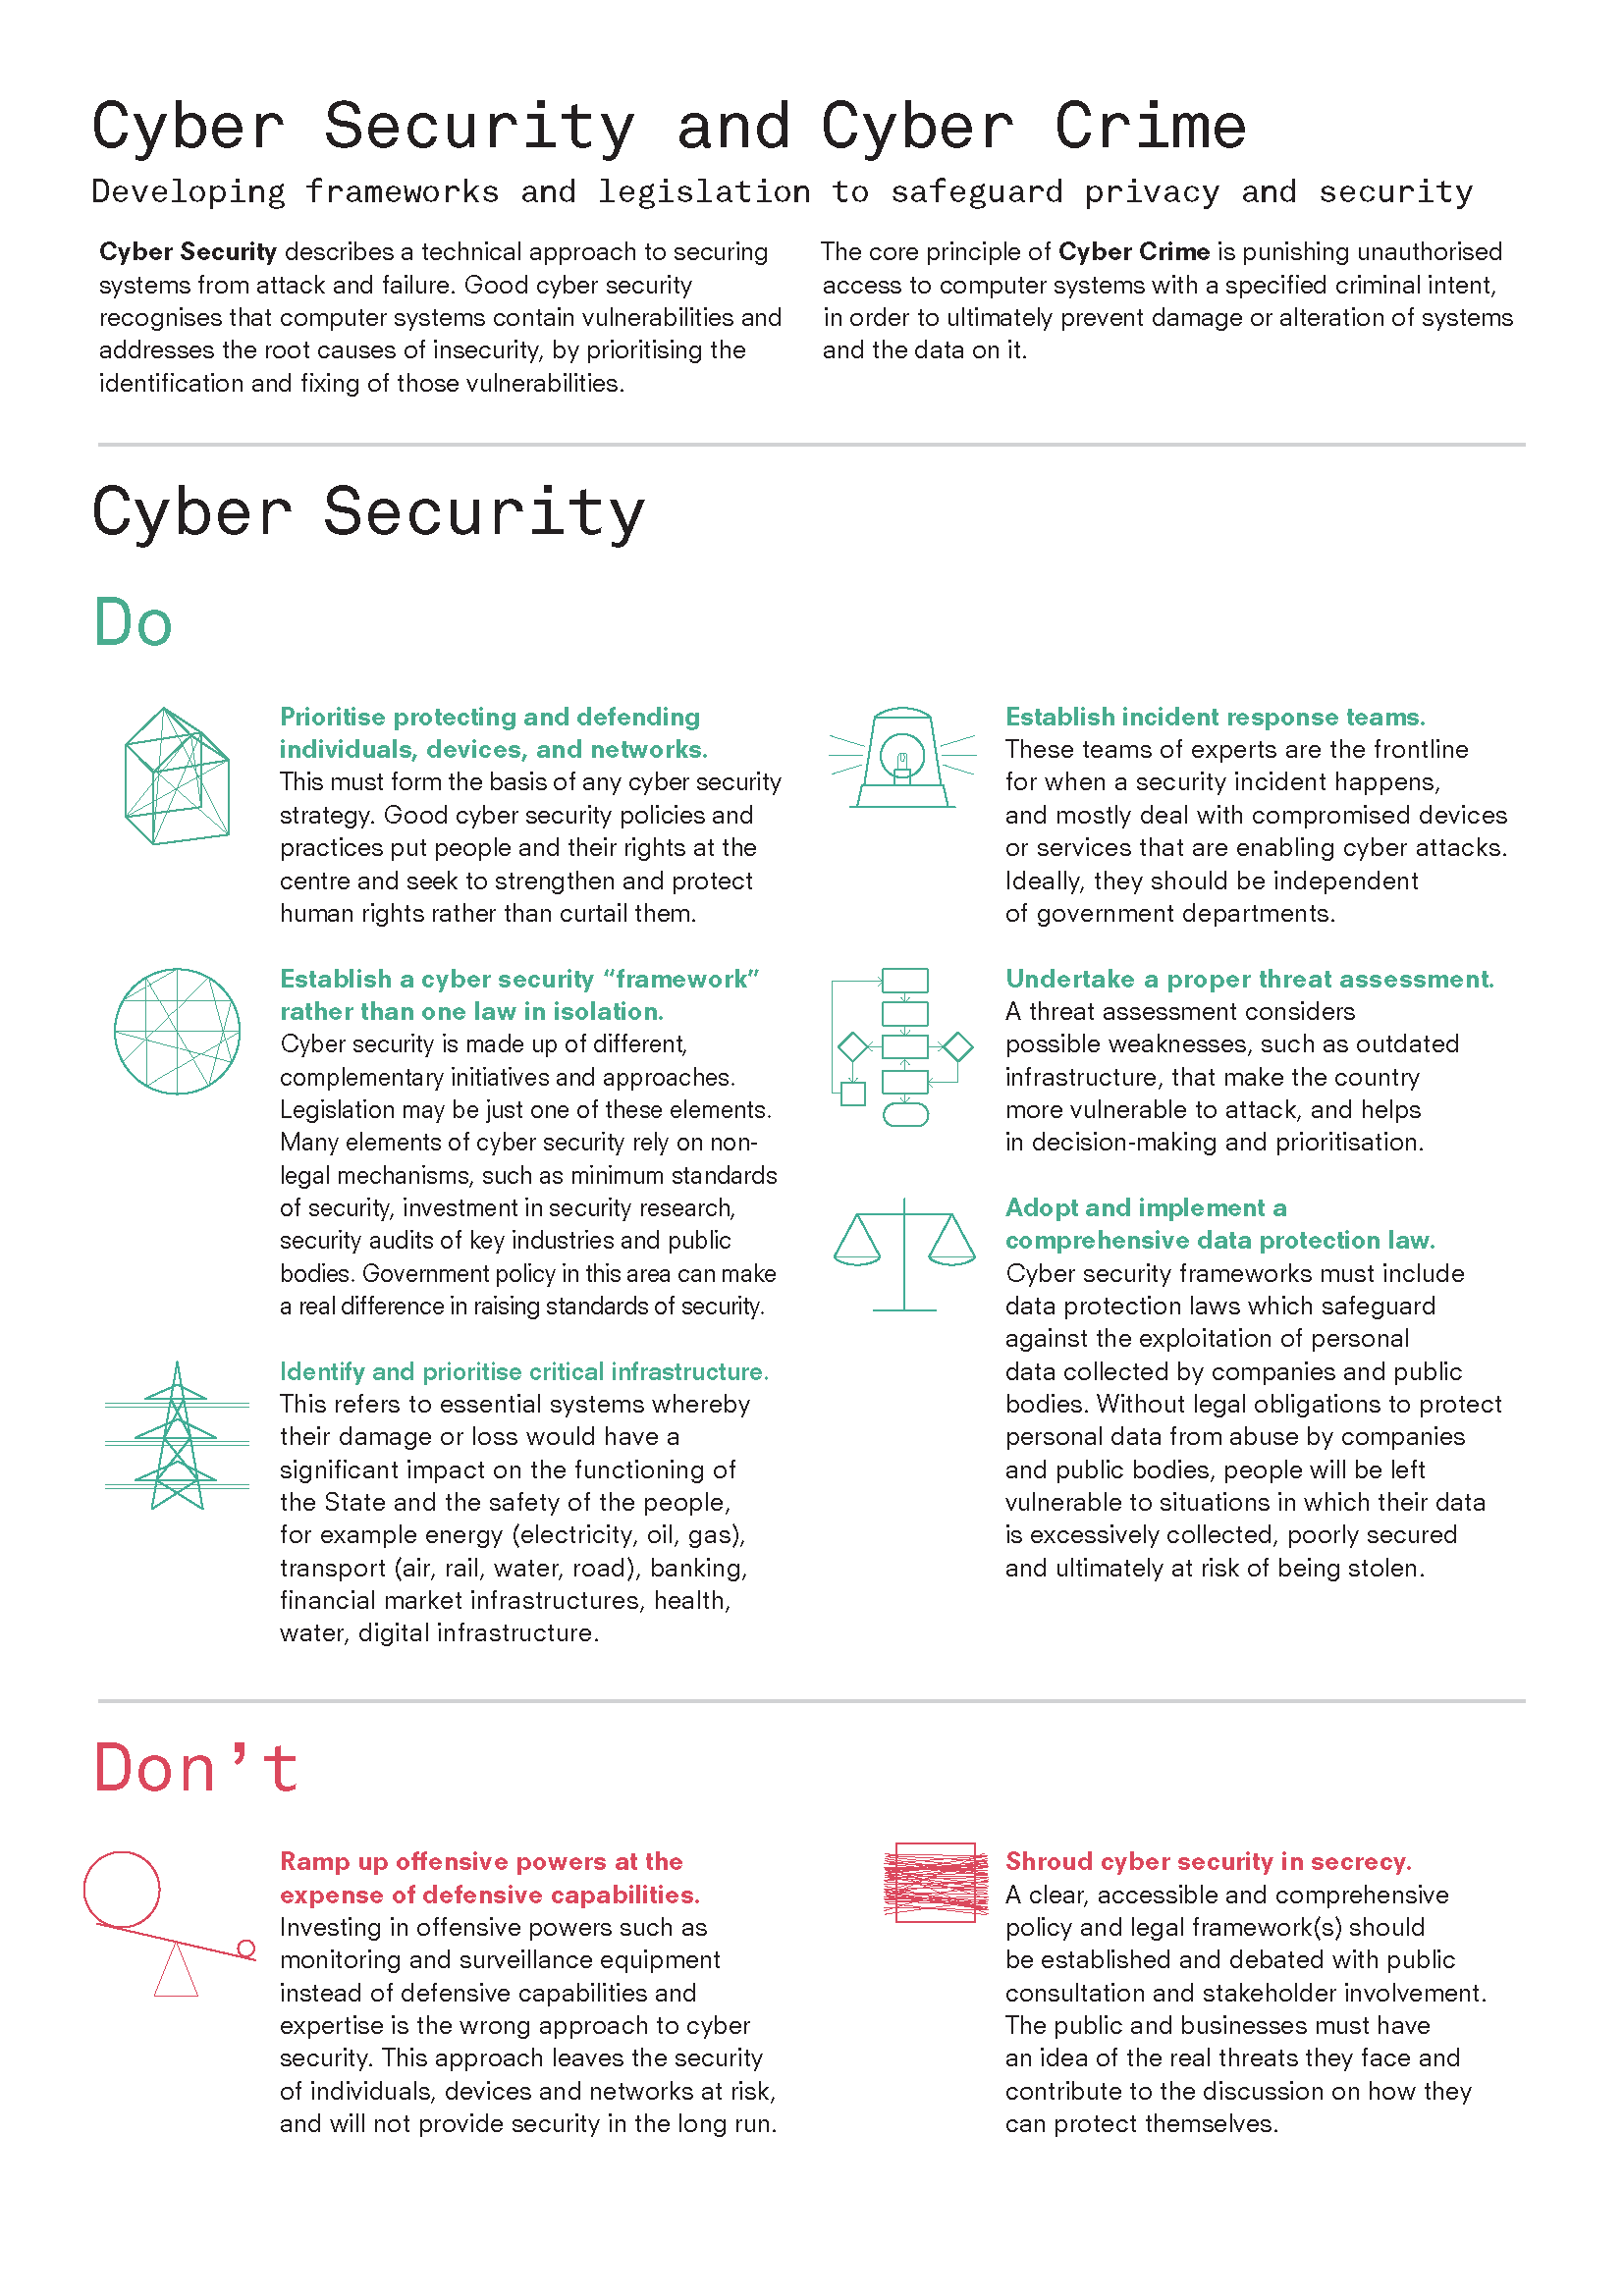 สิ่งที่ควรทำและไม่ควรทำสำหรับการรักษาความมั่นคงปลอดภัยไซเบอร์ (cyber security) โดย Privacy International